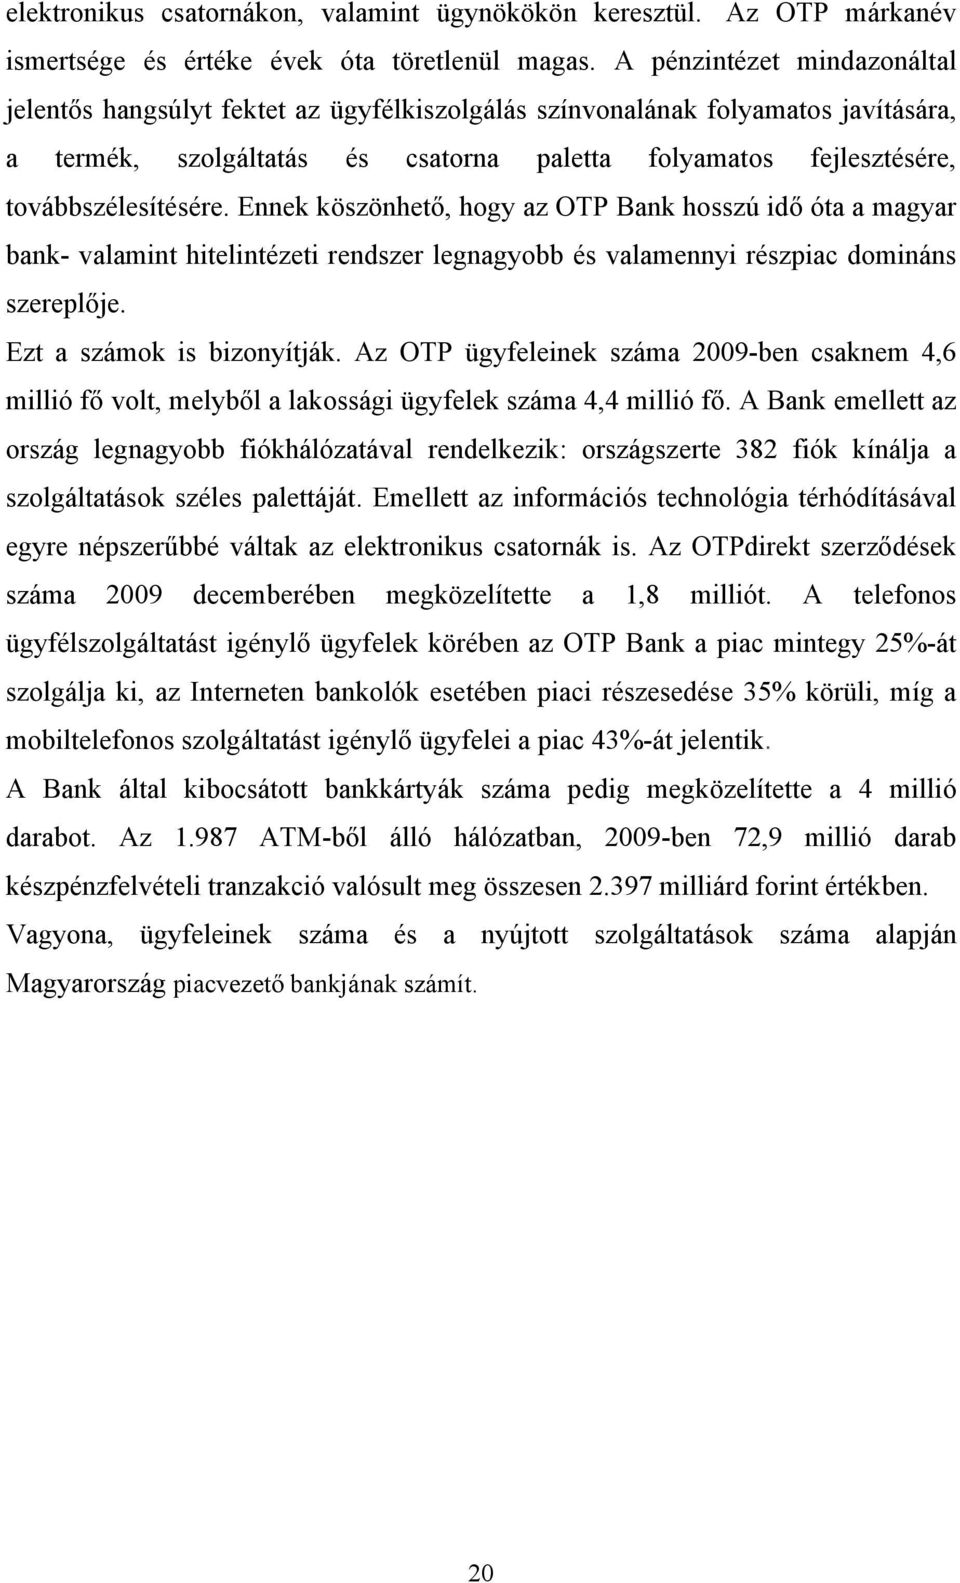 továbbszélesítésére. Ennek köszönhető, hogy az OTP Bank hosszú idő óta a magyar bank- valamint hitelintézeti rendszer legnagyobb és valamennyi részpiac domináns szereplője.